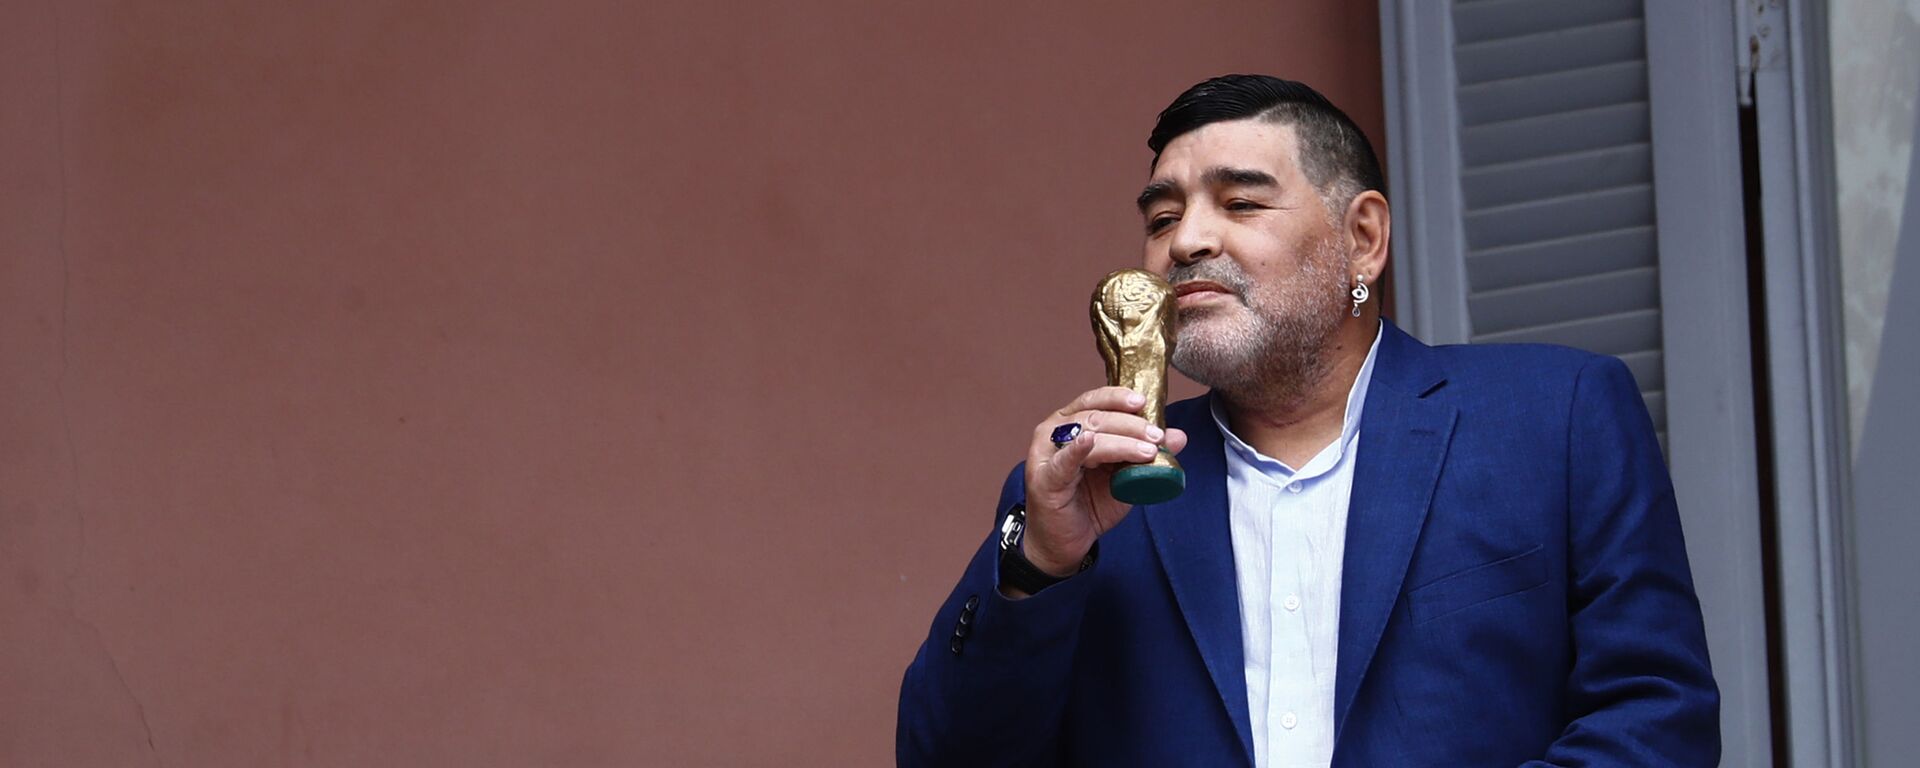 El exfutbolista Diego Armando Maradona besa una réplica de la Copa del Mundo en el balcón de la Casa Rosada - Sputnik Mundo, 1920, 27.10.2021